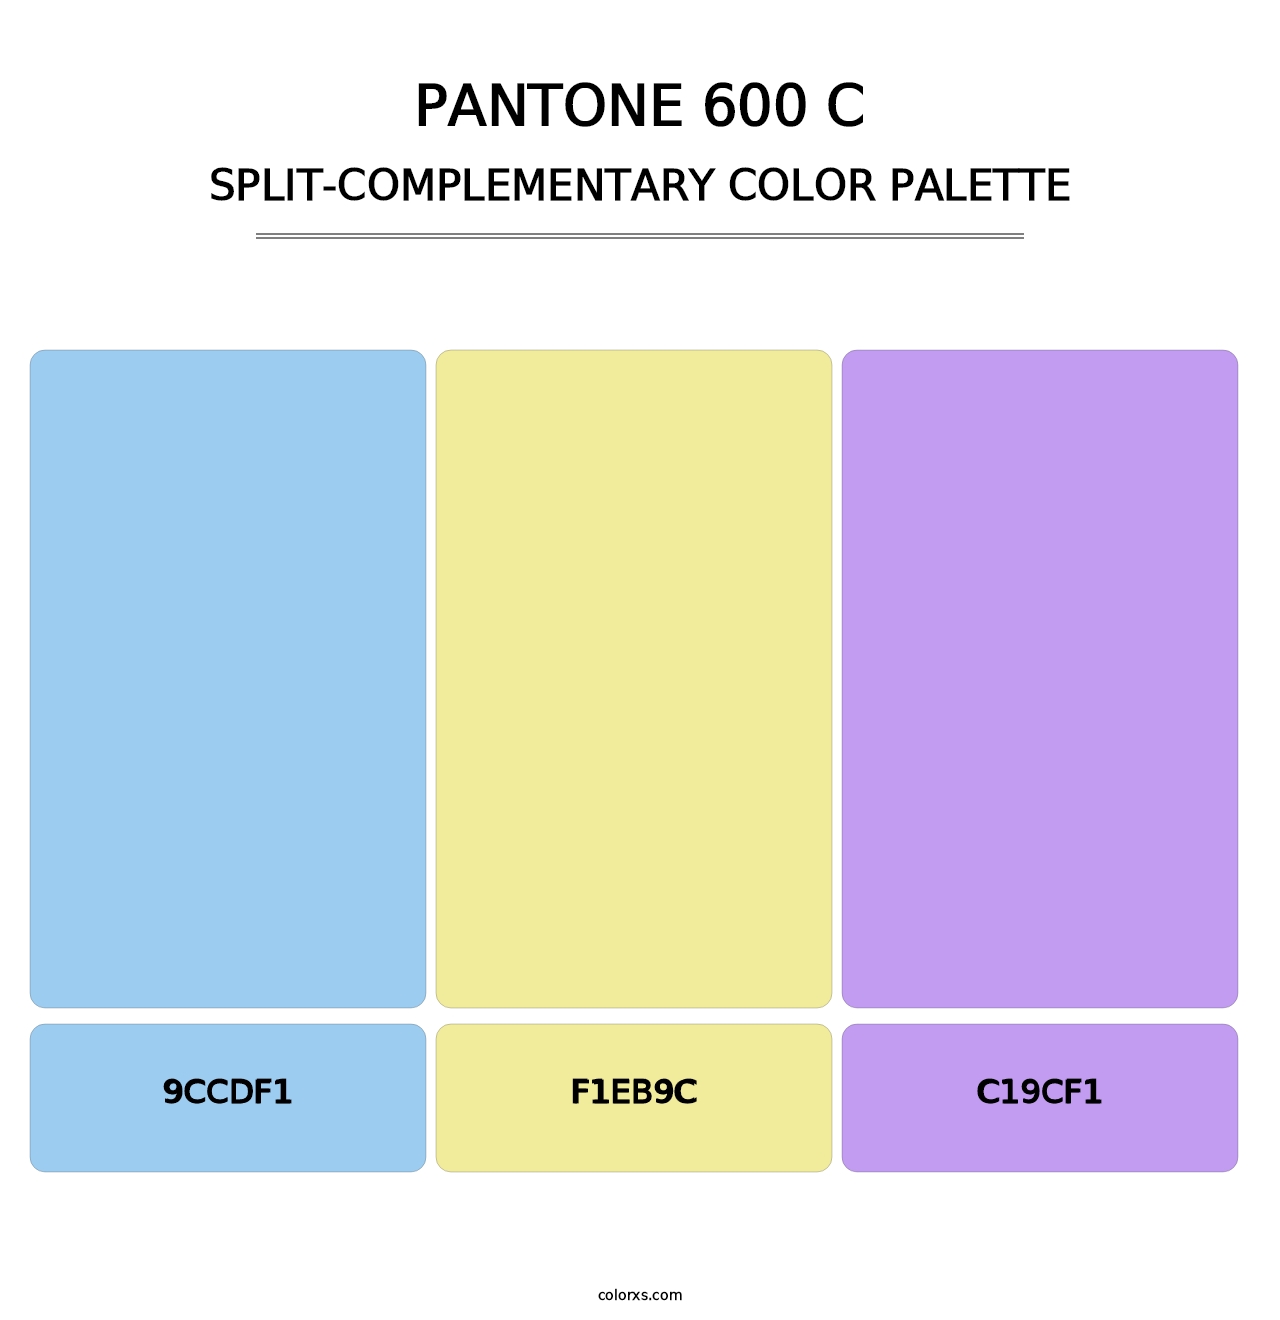 PANTONE 600 C - Split-Complementary Color Palette